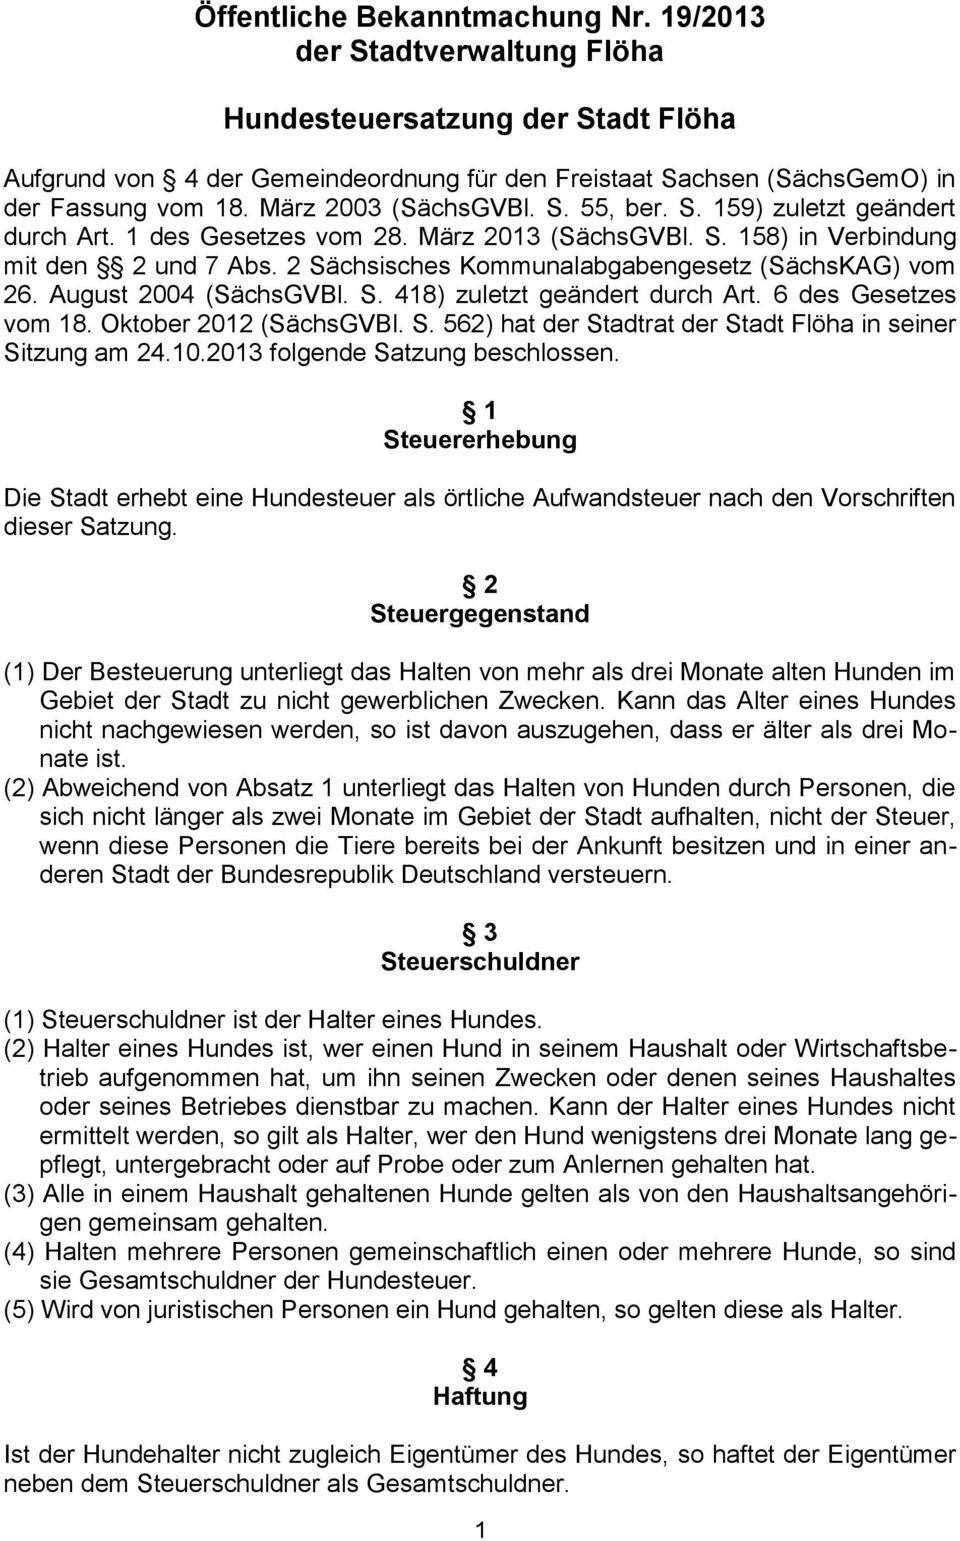 2 Sächsisches Kommunalabgabengesetz (SächsKAG) vom 26. August 2004 (SächsGVBl. S. 418) zuletzt geändert durch Art. 6 des Gesetzes vom 18. Oktober 2012 (SächsGVBl. S. 562) hat der Stadtrat der Stadt Flöha in seiner Sitzung am 24.